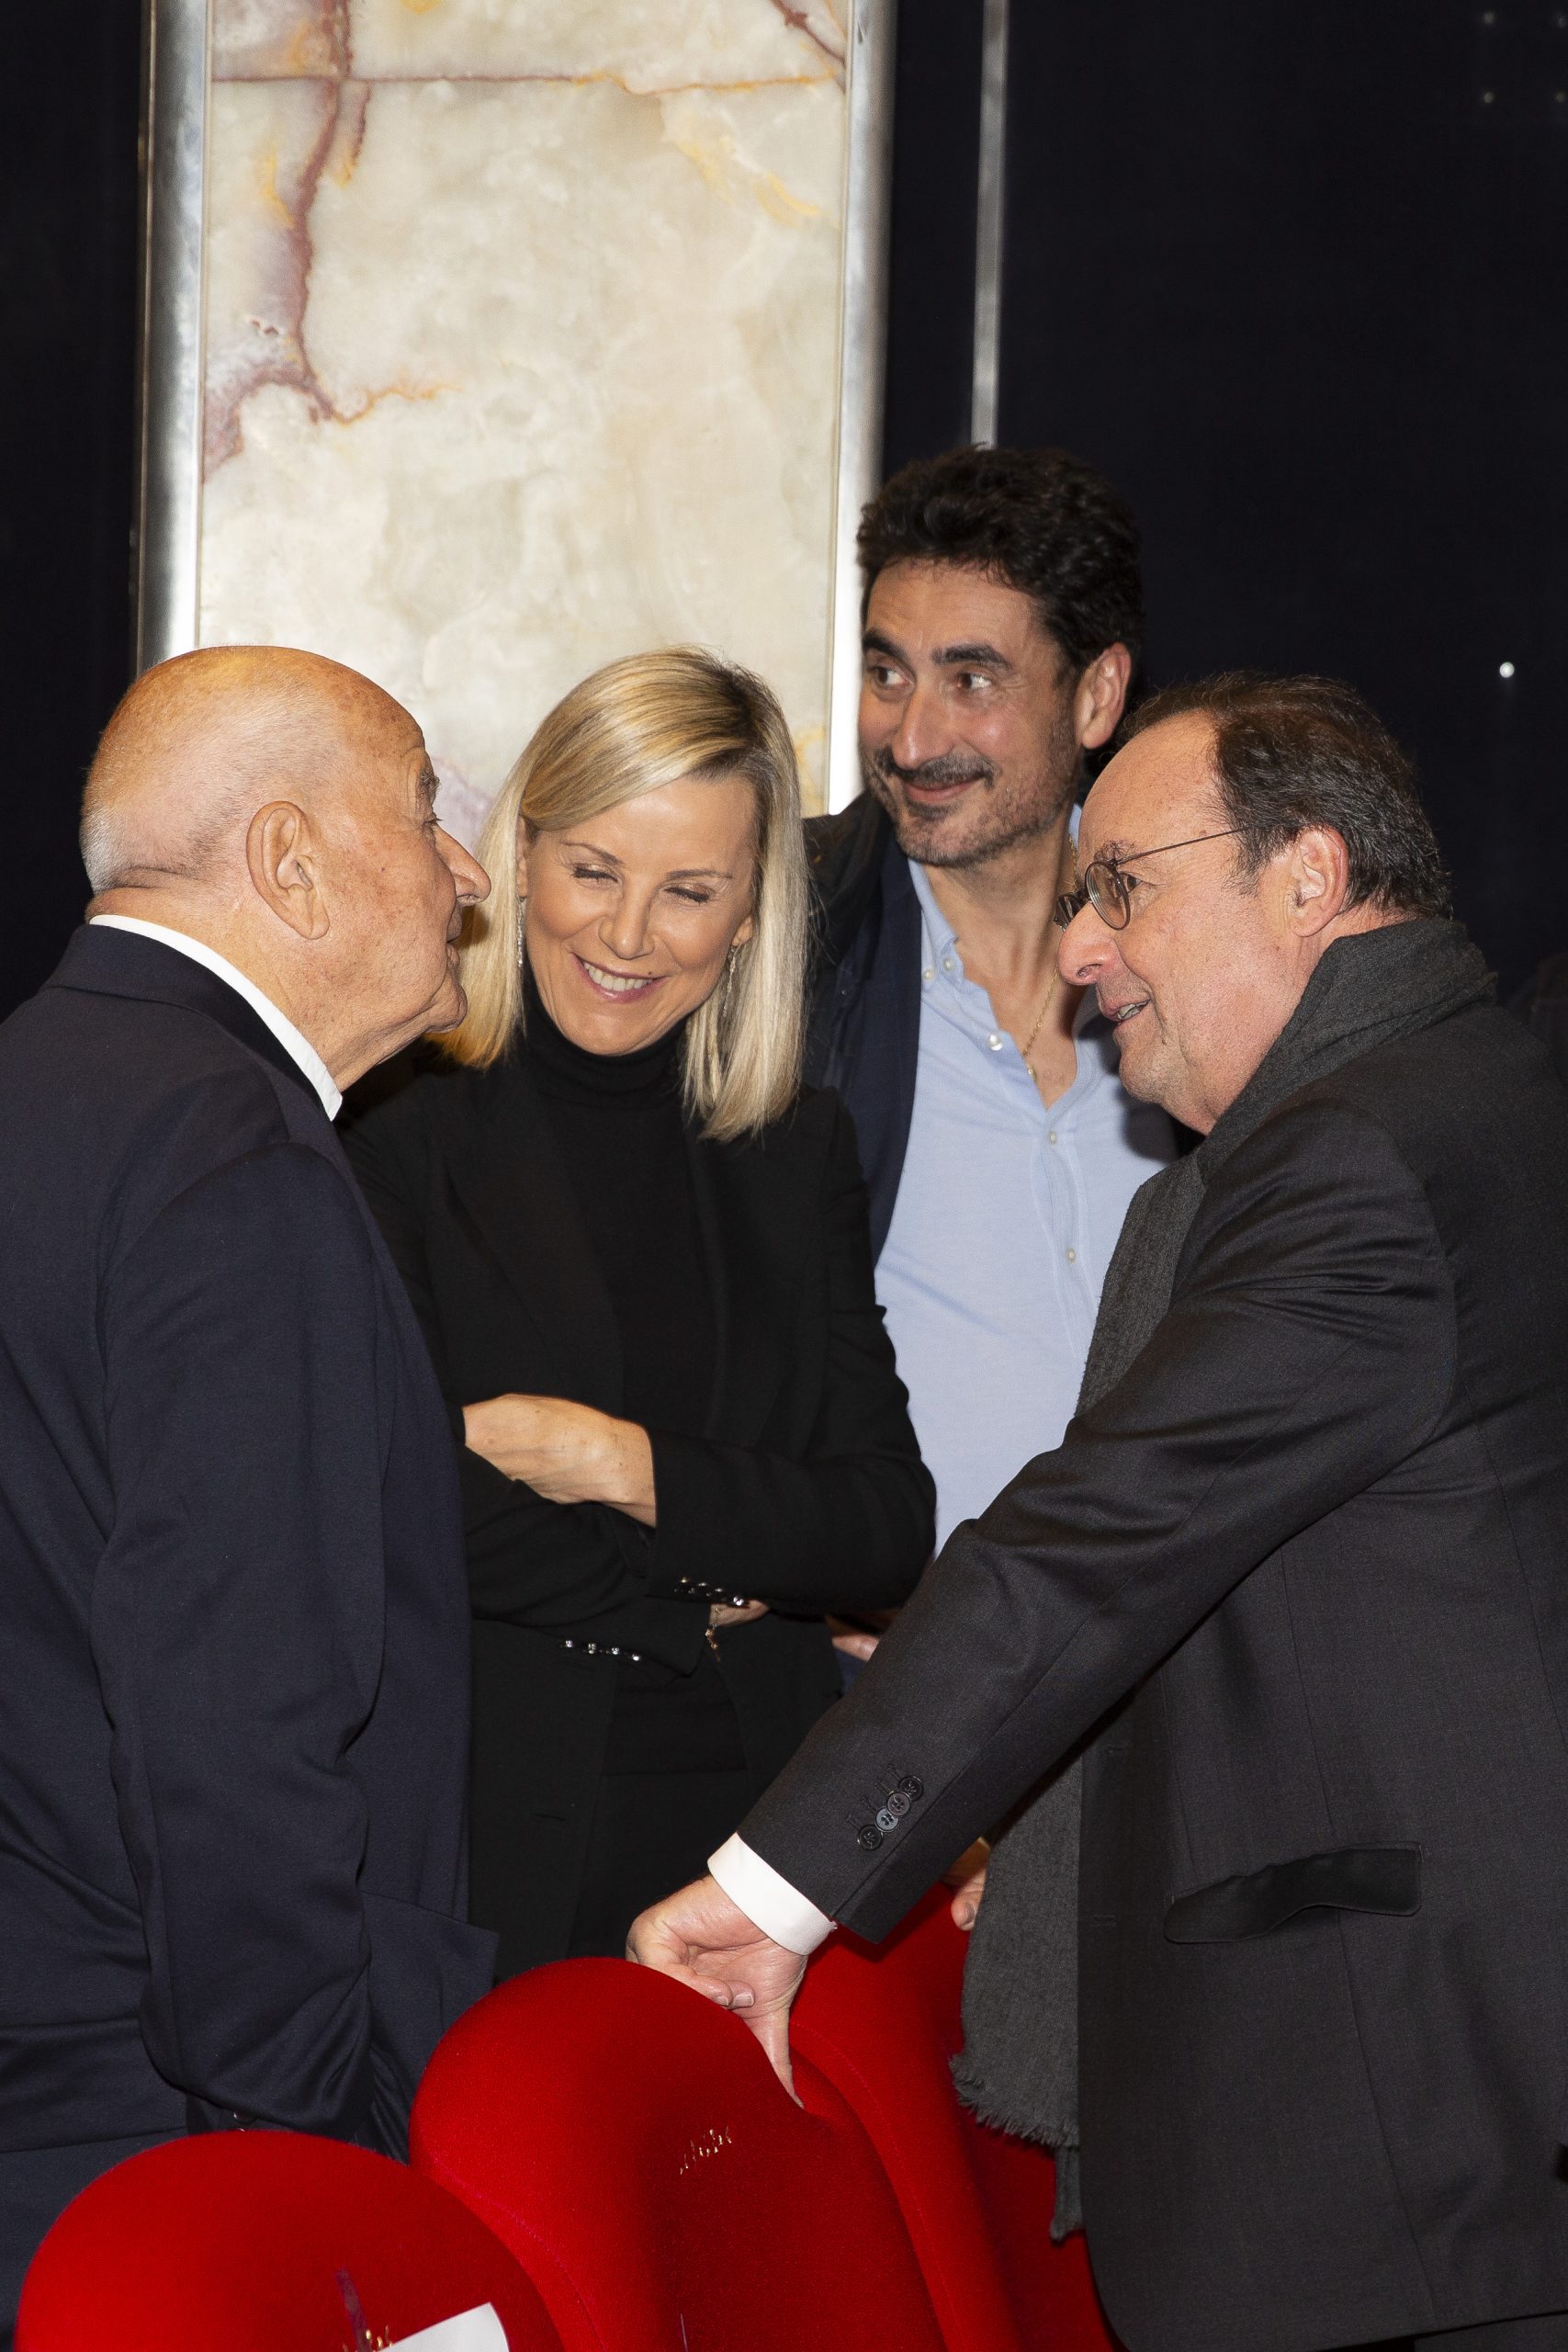 Laurence Ferrari et François Hollande parlent avec deux autres personnes dans la salle du cinéma le balzac